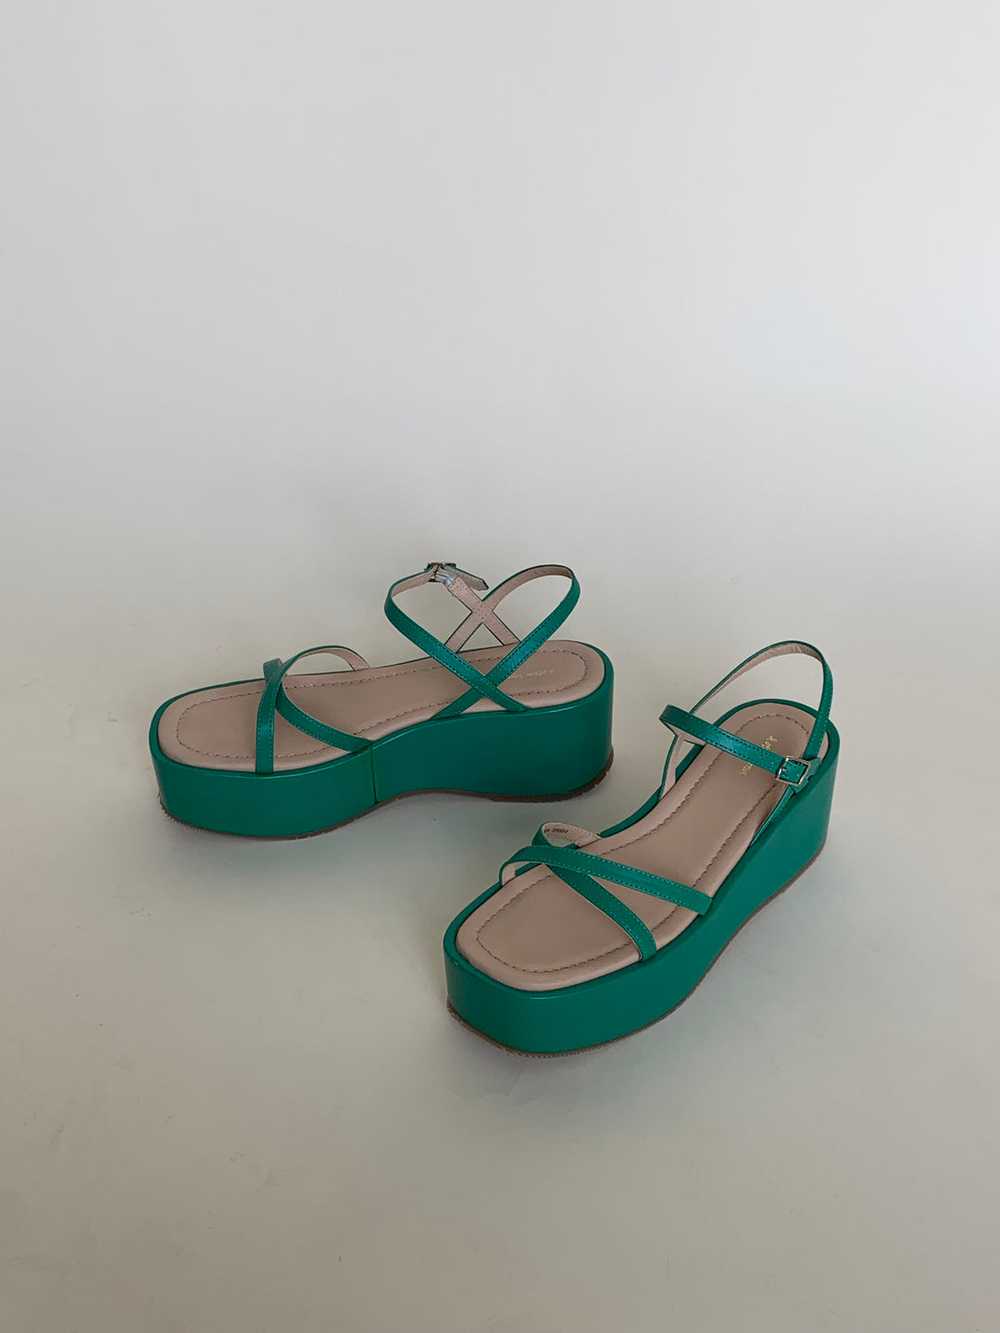 Green platform sandals - image 1